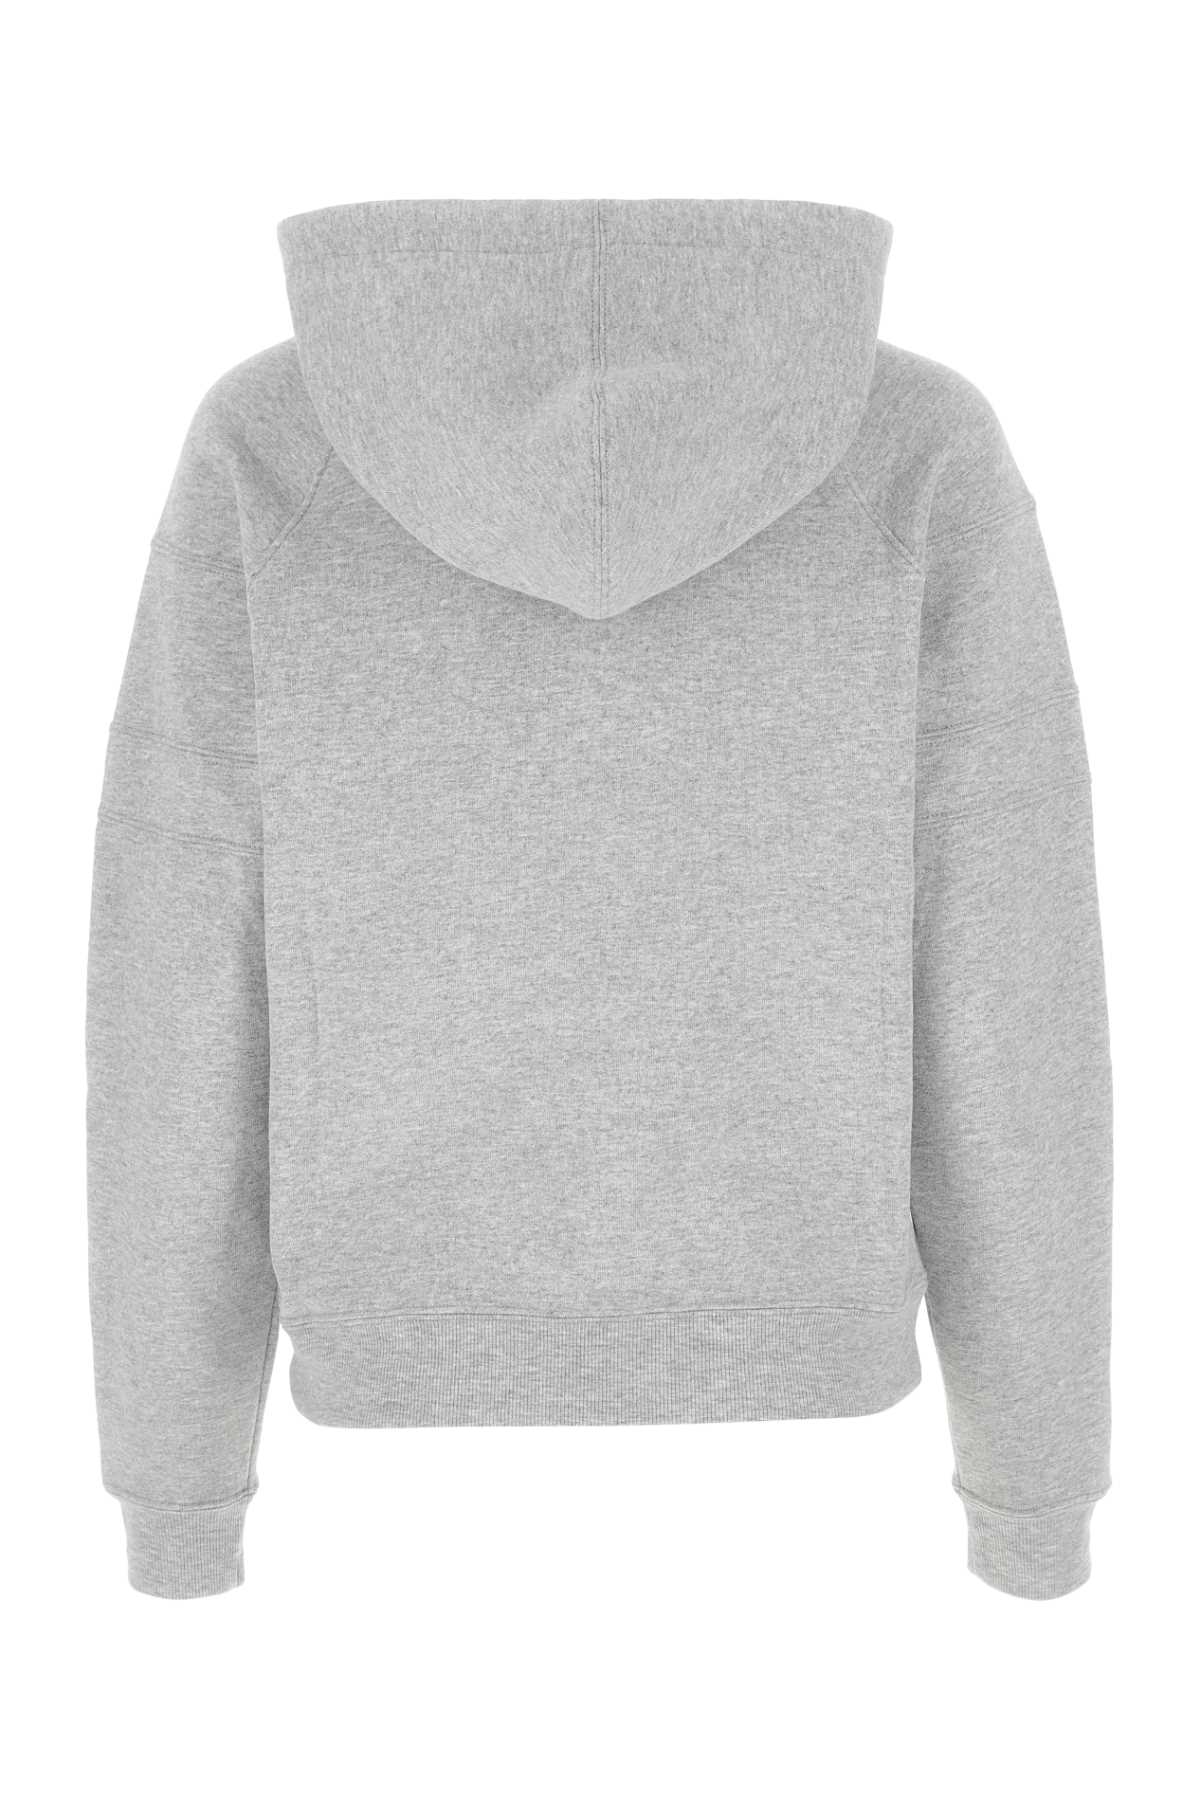 Saint Laurent Grey Cotton Blend Sweatshirt In 1403